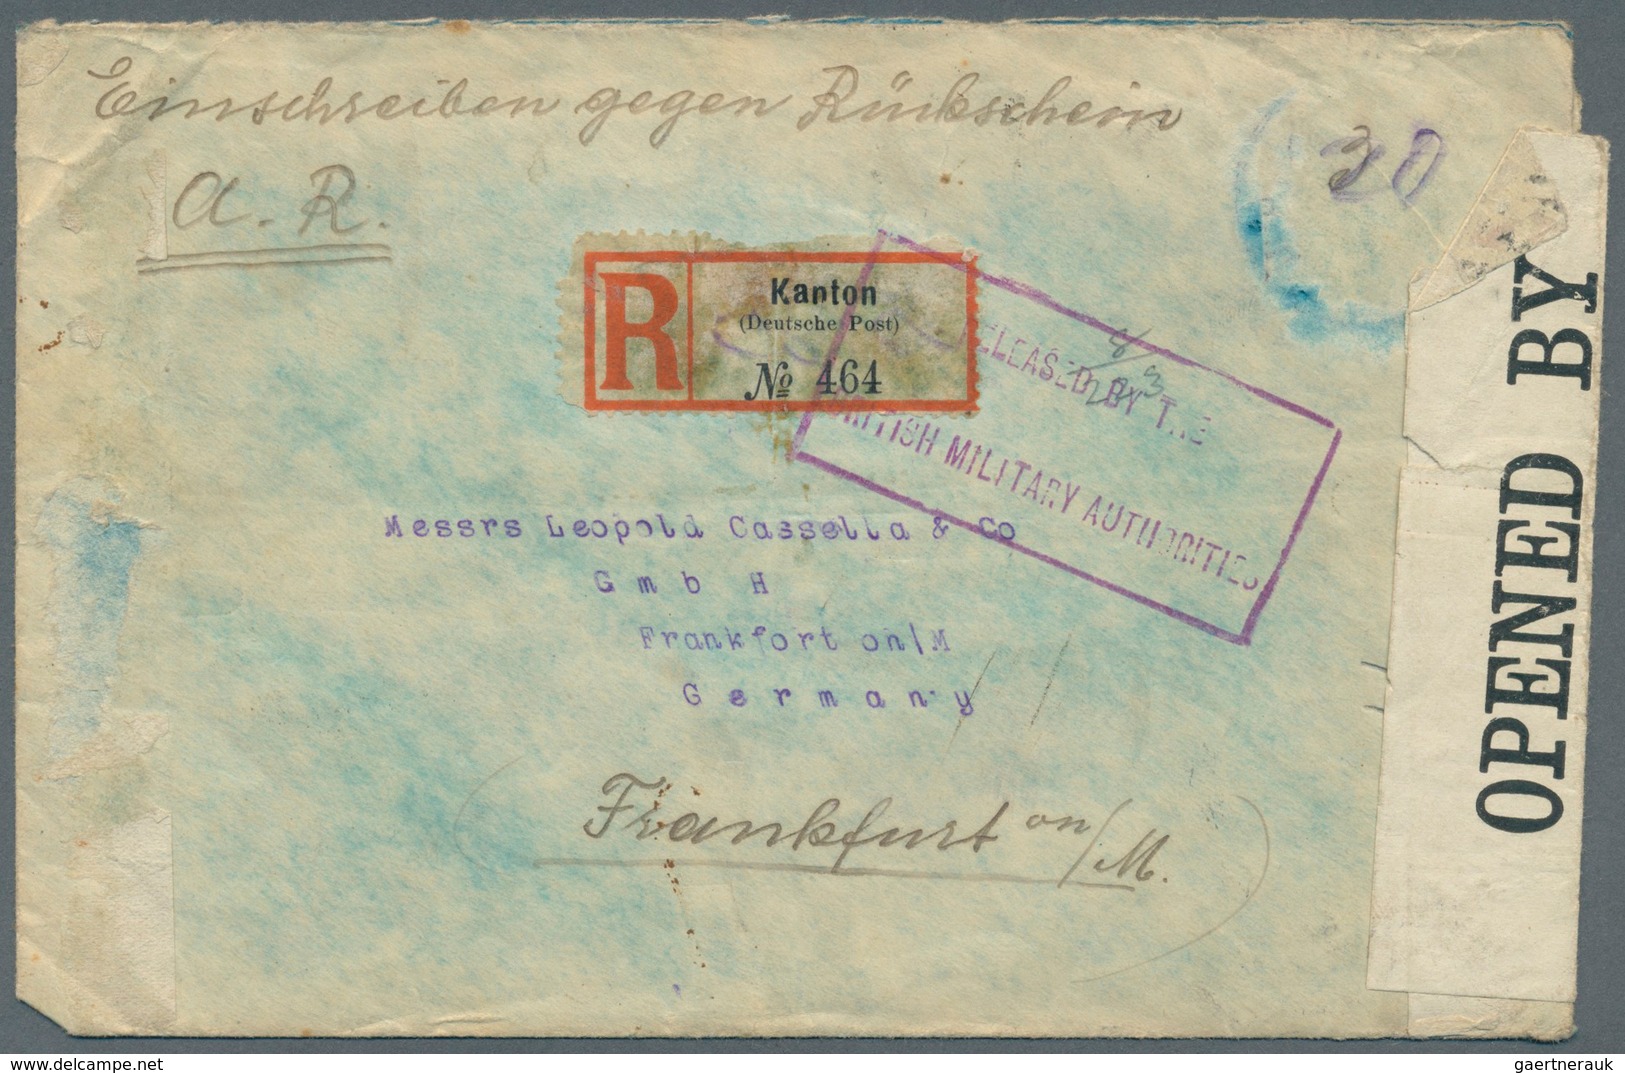 Deutsche Post In China: 1906/1919, 20 C Auf 40 Pf U.a. Rs. Auf Extrem Seltenen Einschreib-Rückschein - Deutsche Post In China